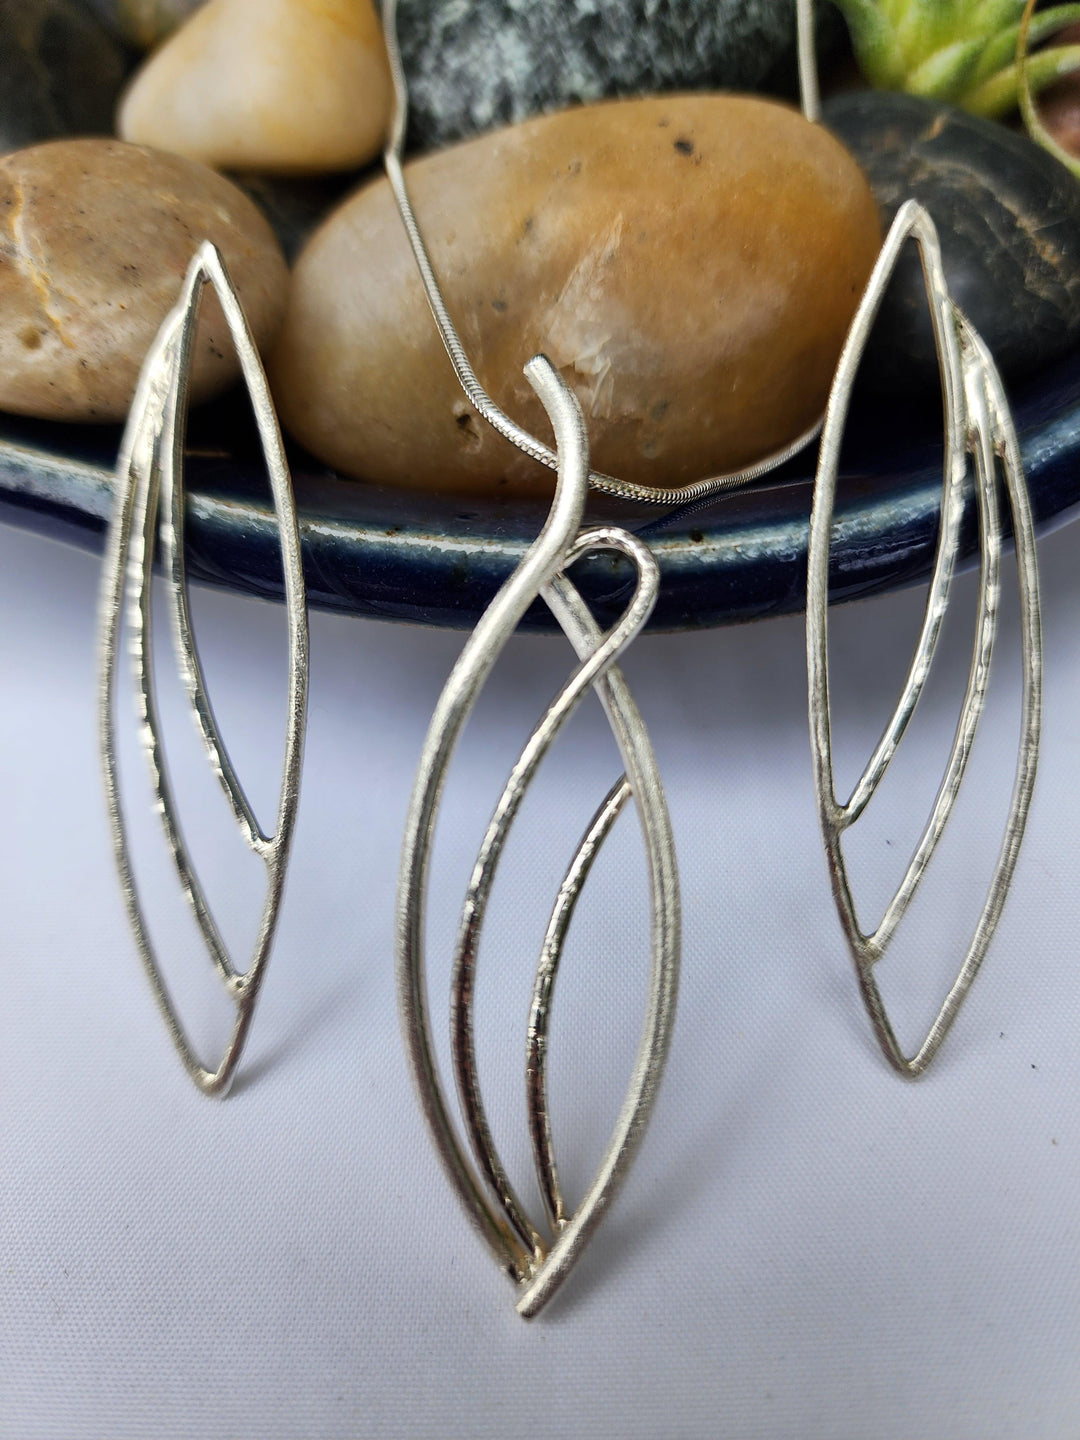 Sterling silver leaf design necklace - LB Designs